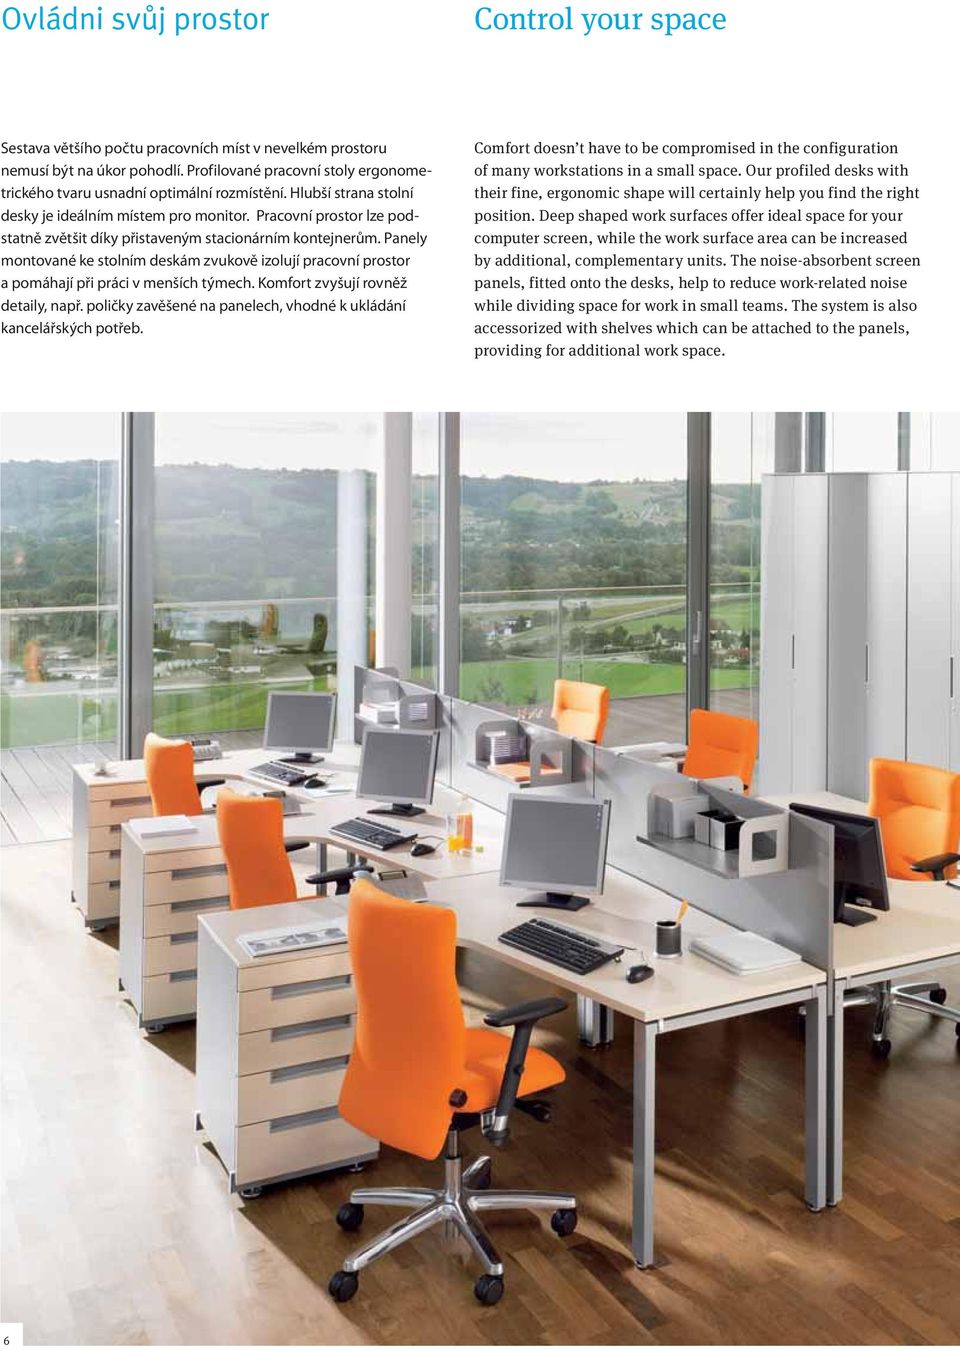 Pracovní prostor lze podstatně zvětšit díky přistaveným stacionárním kontejnerům. Panely montované ke stolním deskám zvukově izolují pracovní prostor a pomáhají při práci v menších týmech.